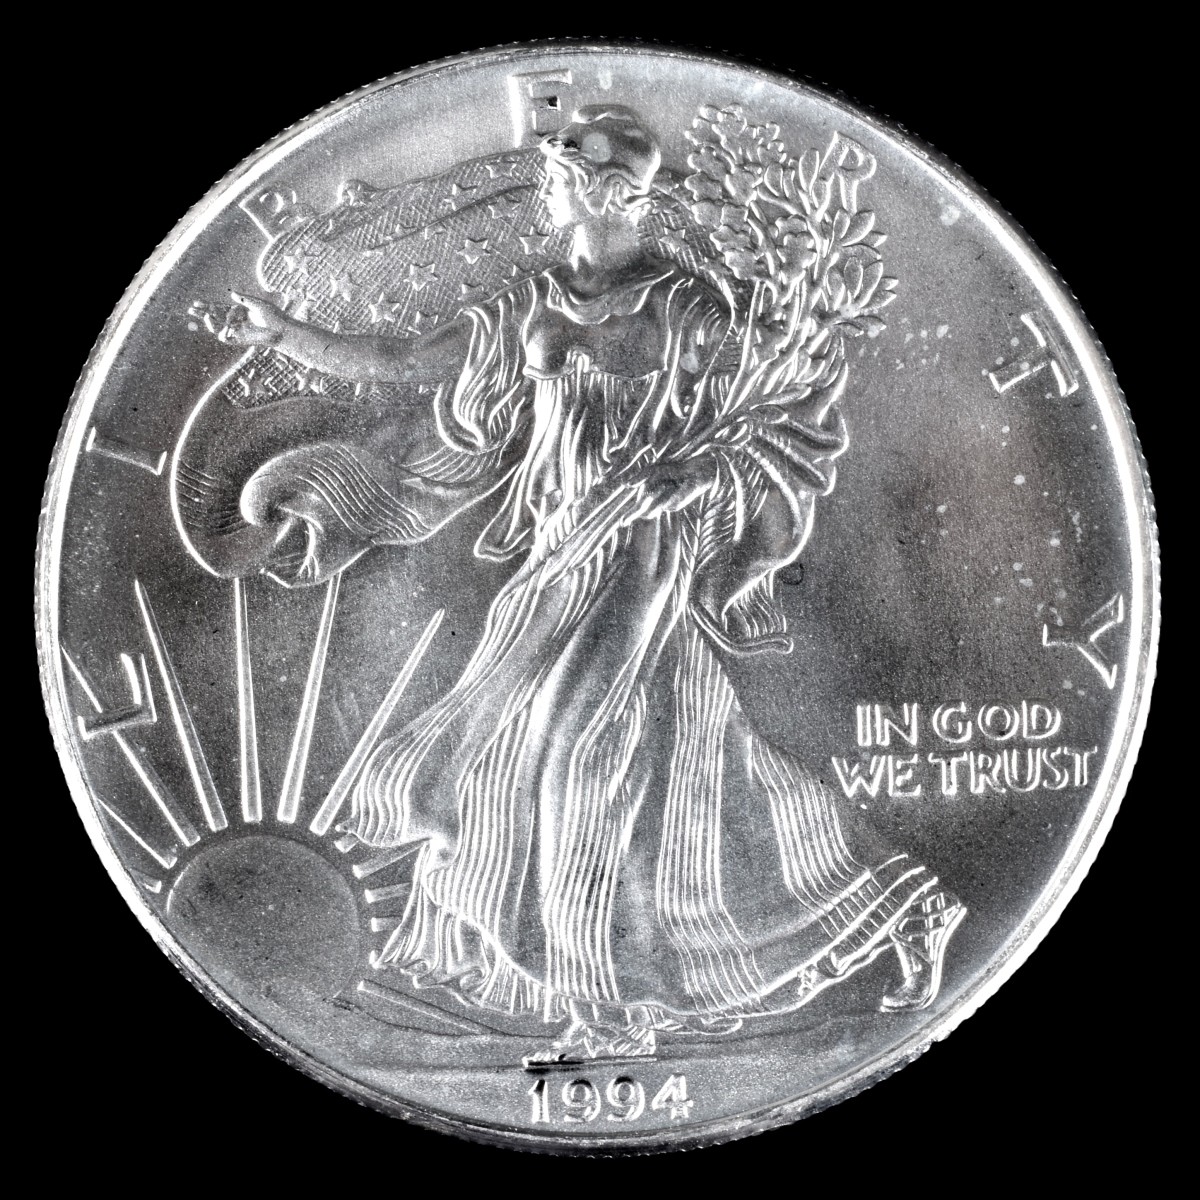 Eighteen 1994 American Silver Eagle Coins